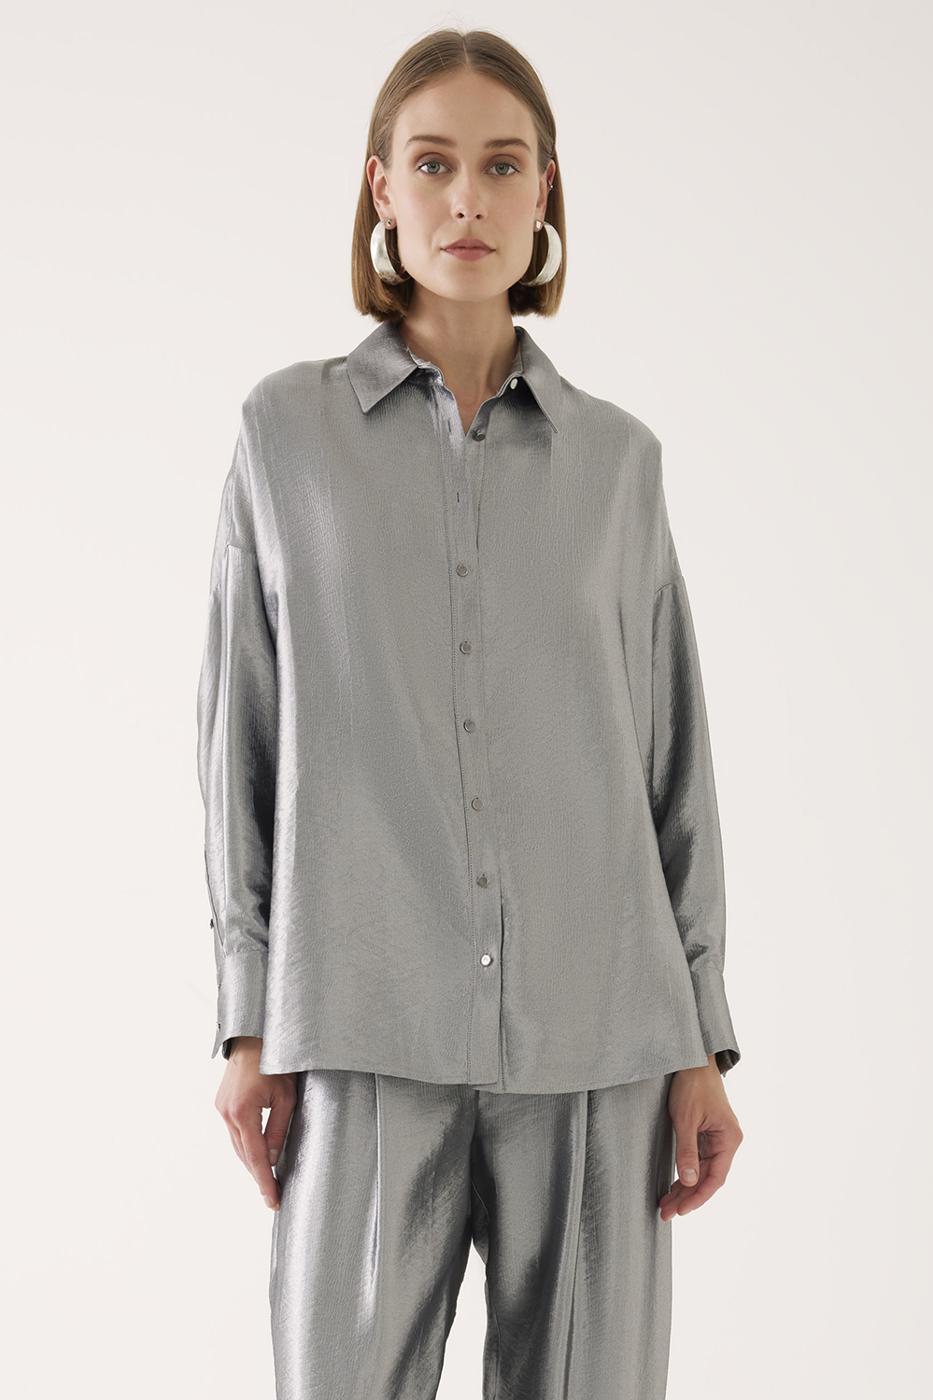 Henrietta Rahat Kalıp Standart Boy Takma Kol Gömlek Yaka Gümüş Renk Kadın Gömlek